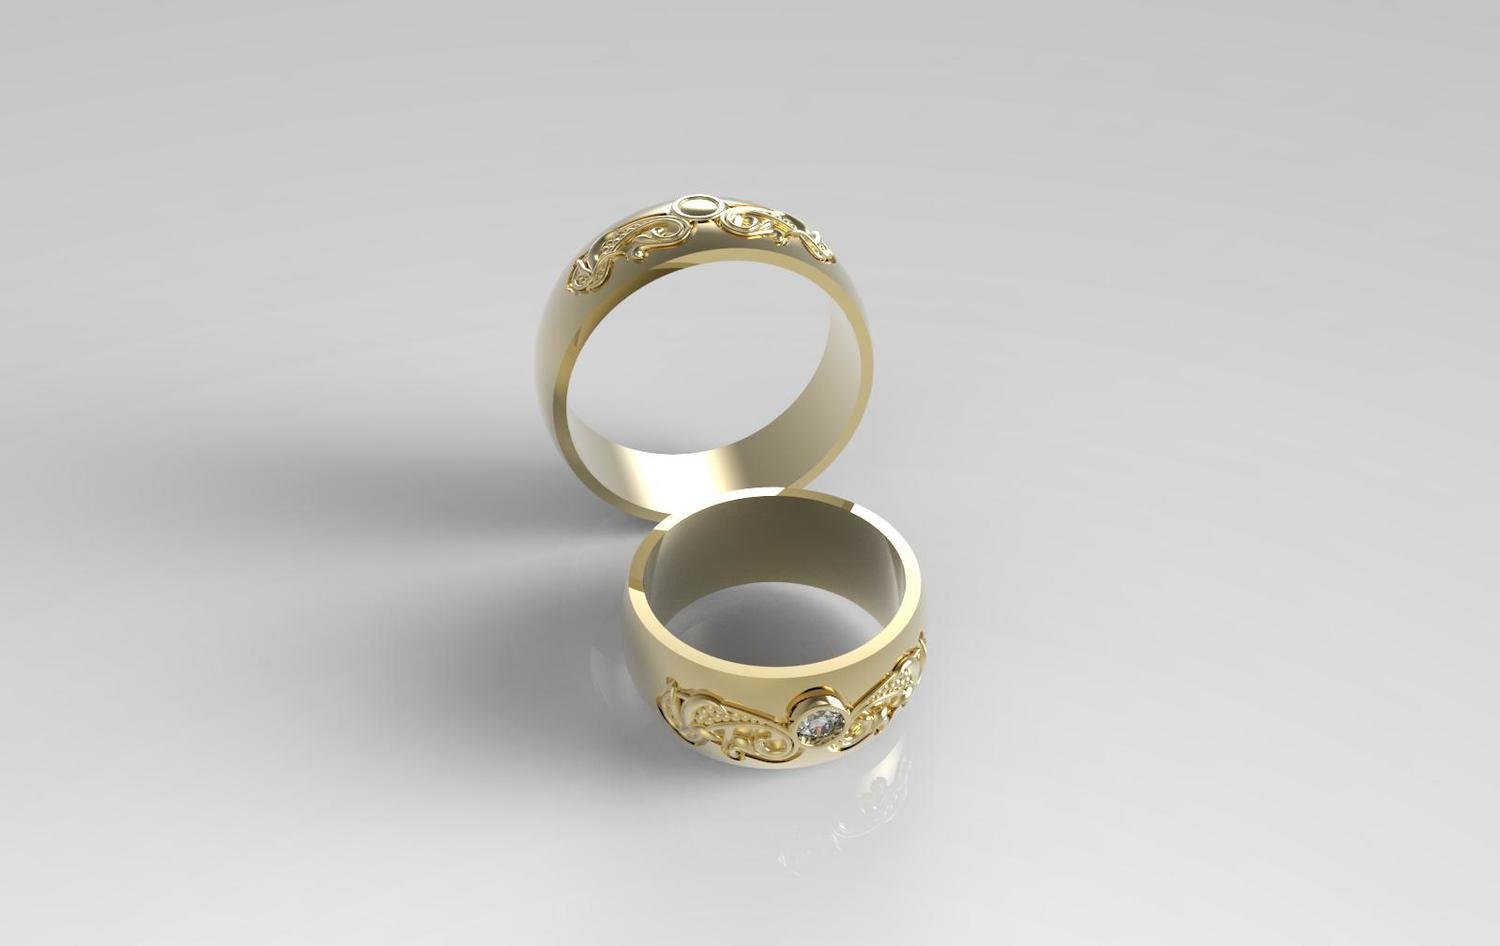 3Д файл модели обручального кольца